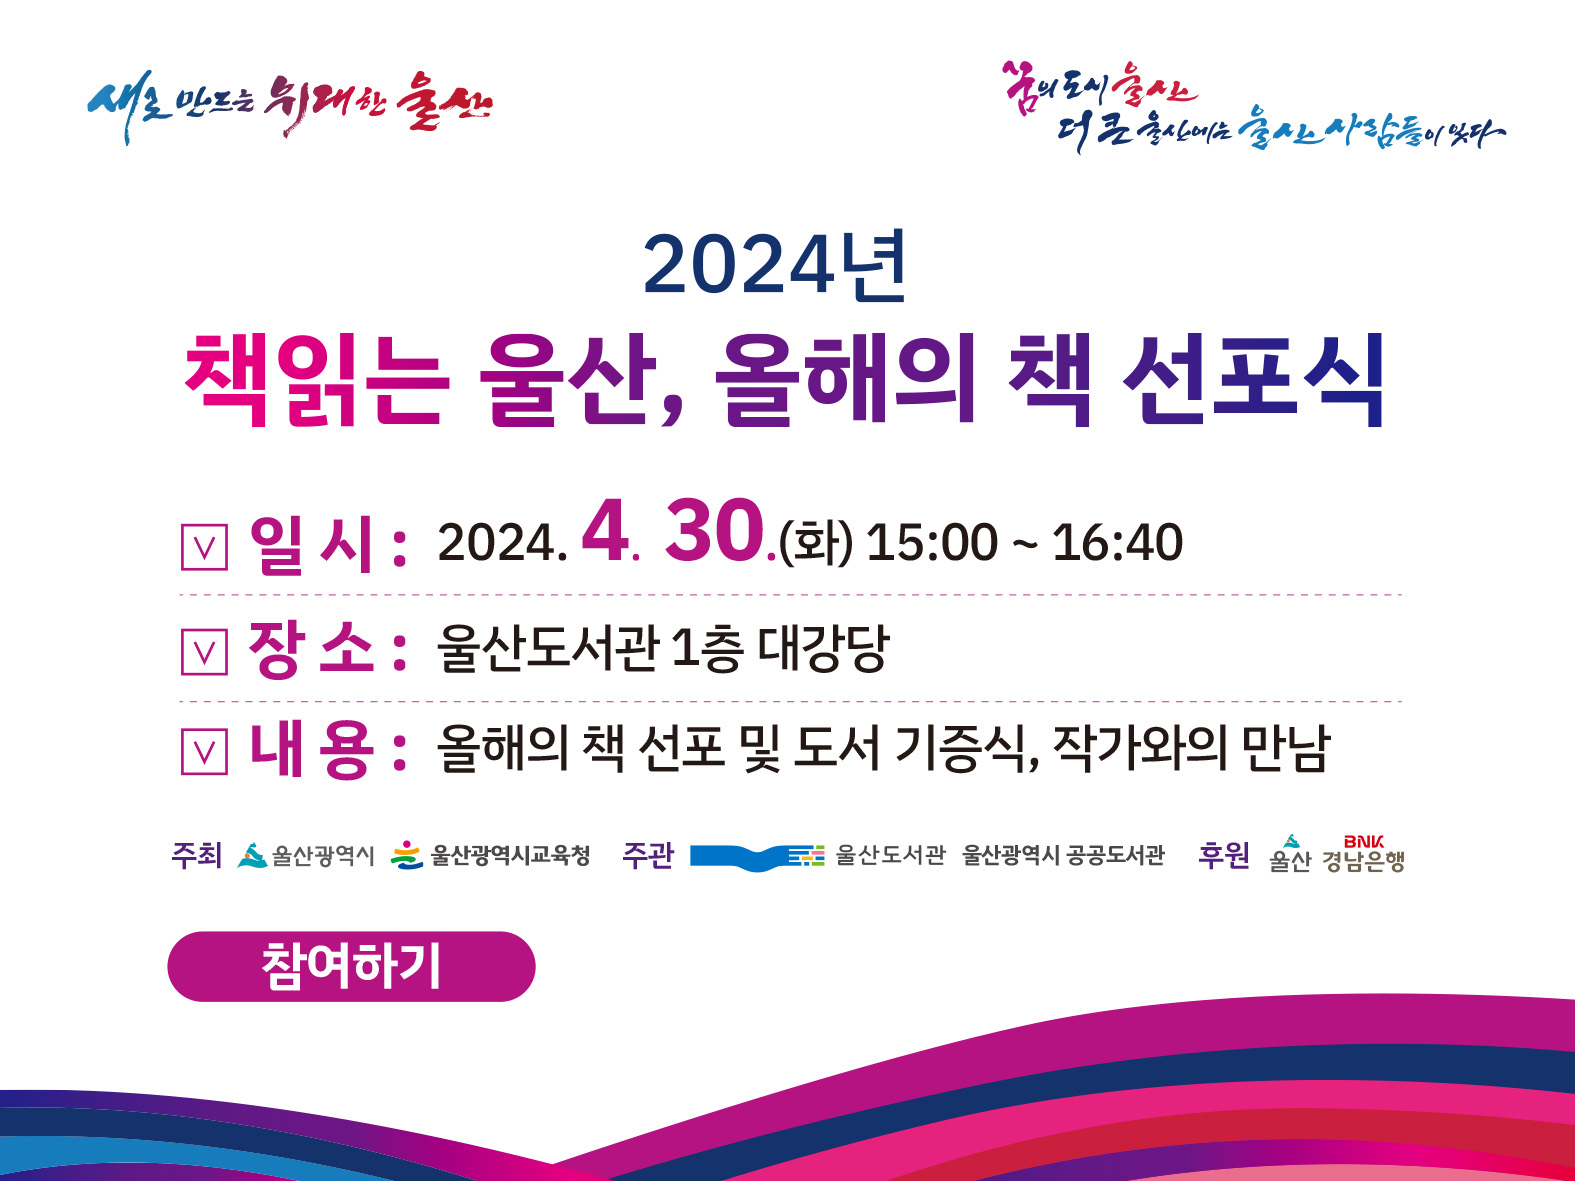 2024년 올해의 책 선포식 행사 개최